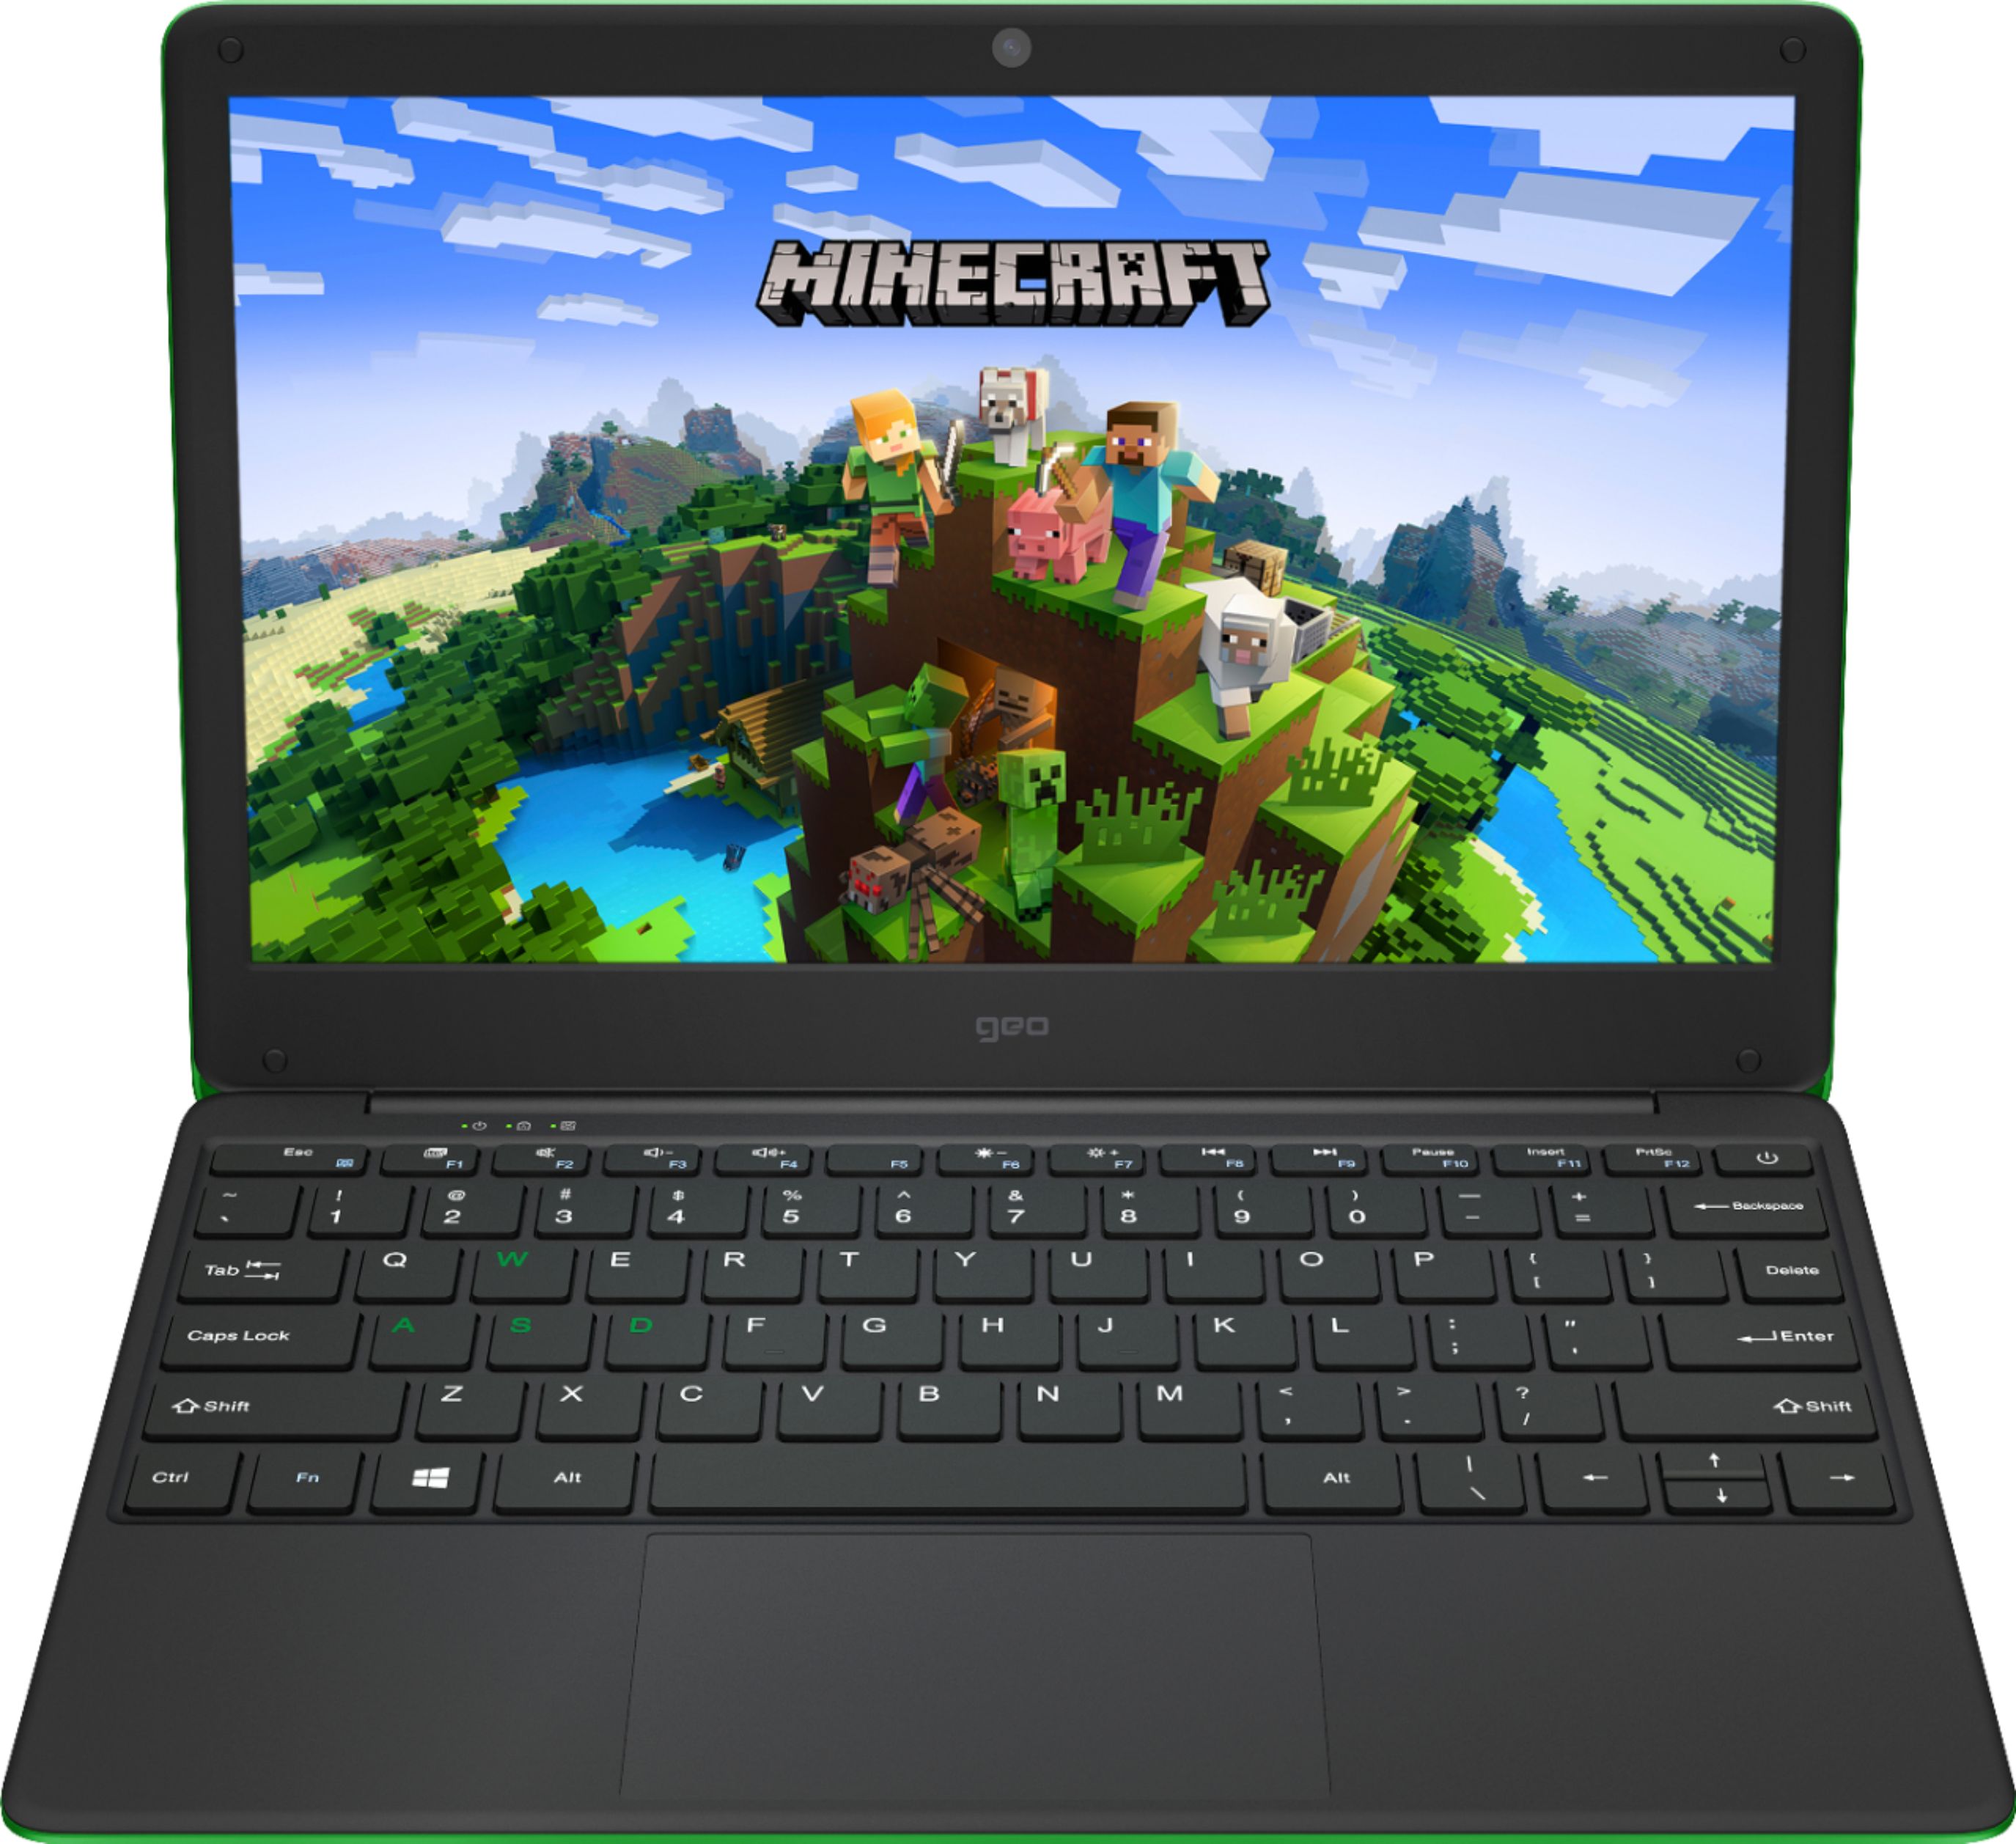 Geo - GeoBook 120 Minecraft Edition 12.5-inch HD Laptop - Intel Celeron